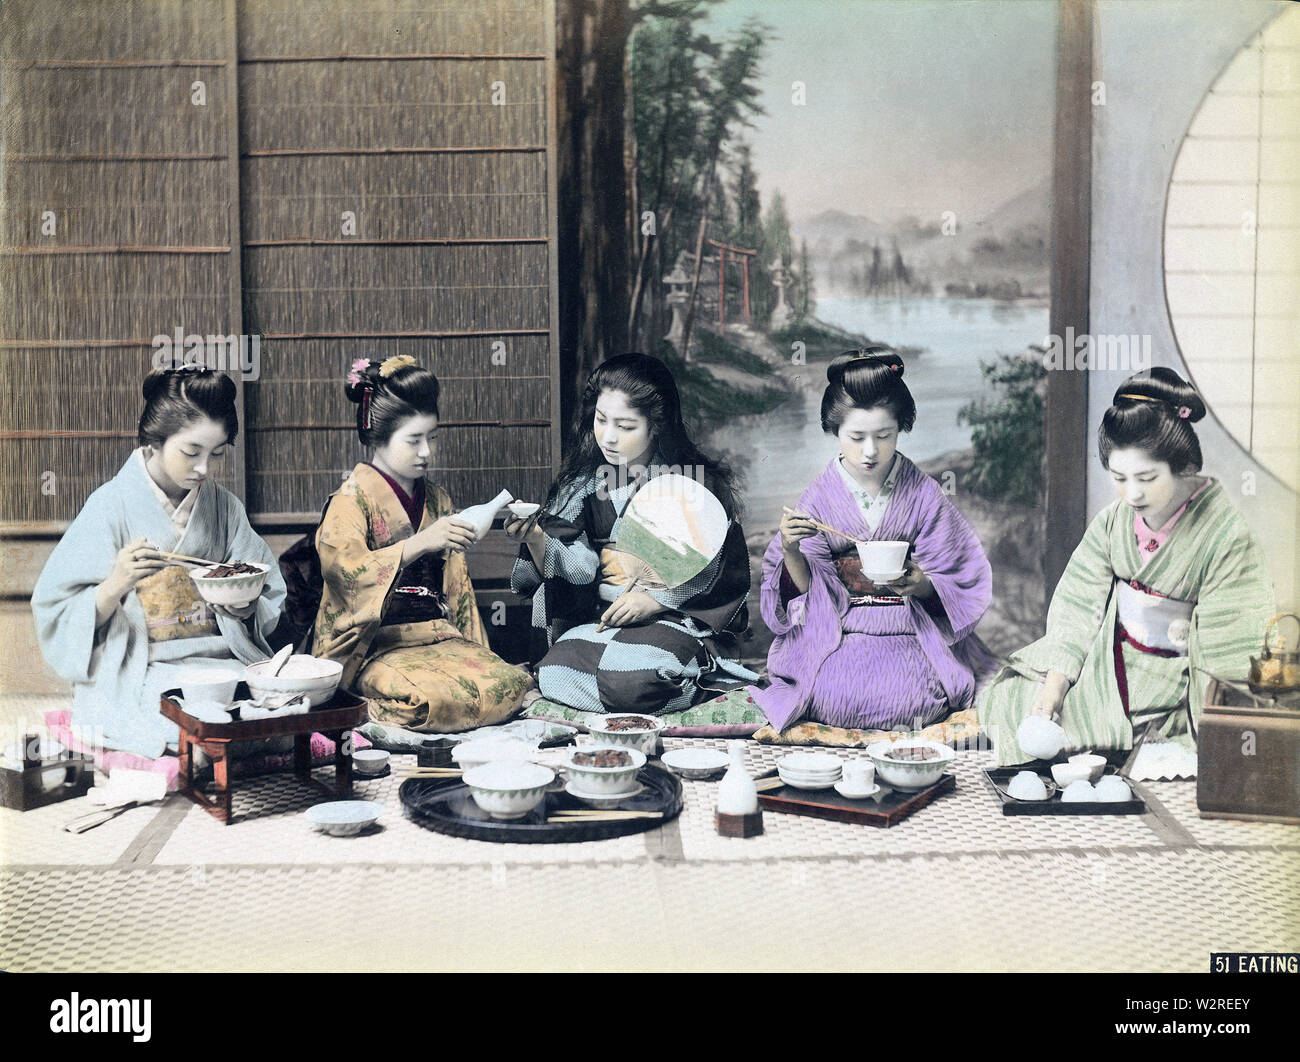 [1890s Japan - Frauen in einer Mahlzeit] - in einer Mahlzeit. Fünf junge Frauen im Kimono auf dem Boden sitzt. Zwei Frauen sind mit Stäbchen, Man gießt Sake (Reiswein), in die Schale der Frau neben ihr, während die fünfte Gießen ist Tee. 19 Vintage albumen Foto. Stockfoto